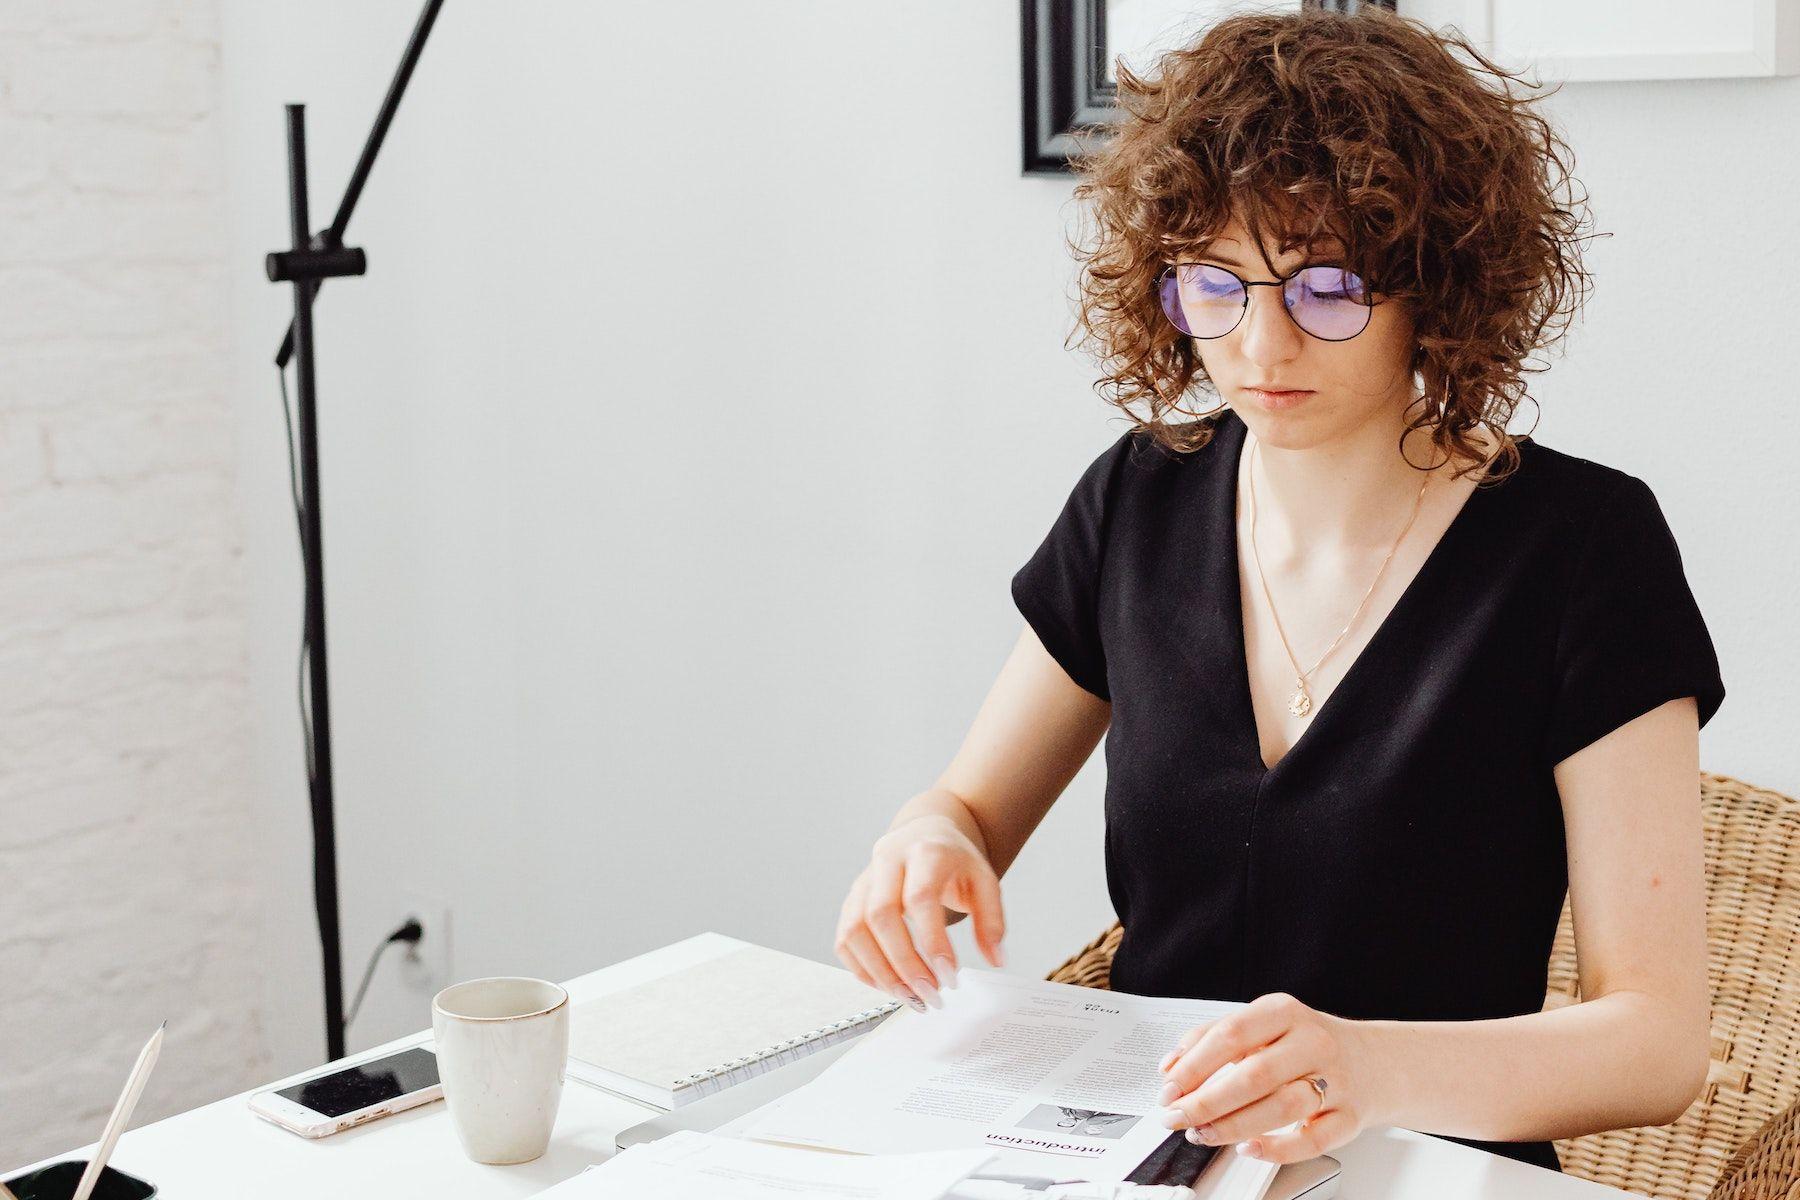 Kvinna som arbetar med papper, har glasögon och lockigt hår